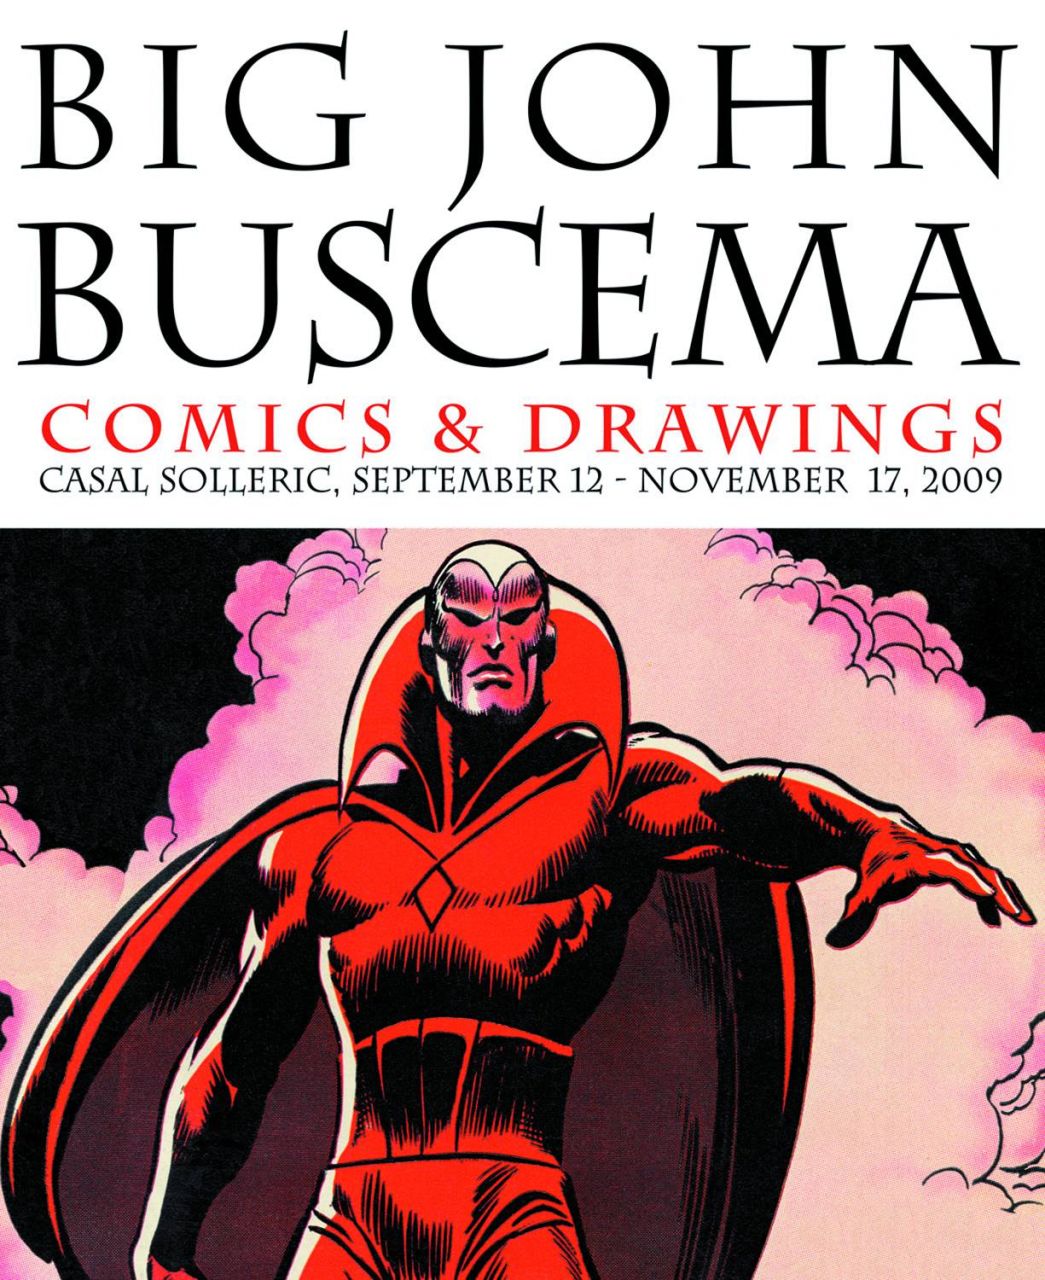 BIG JOHN BUSCEMA COMICS & DRAWINGS